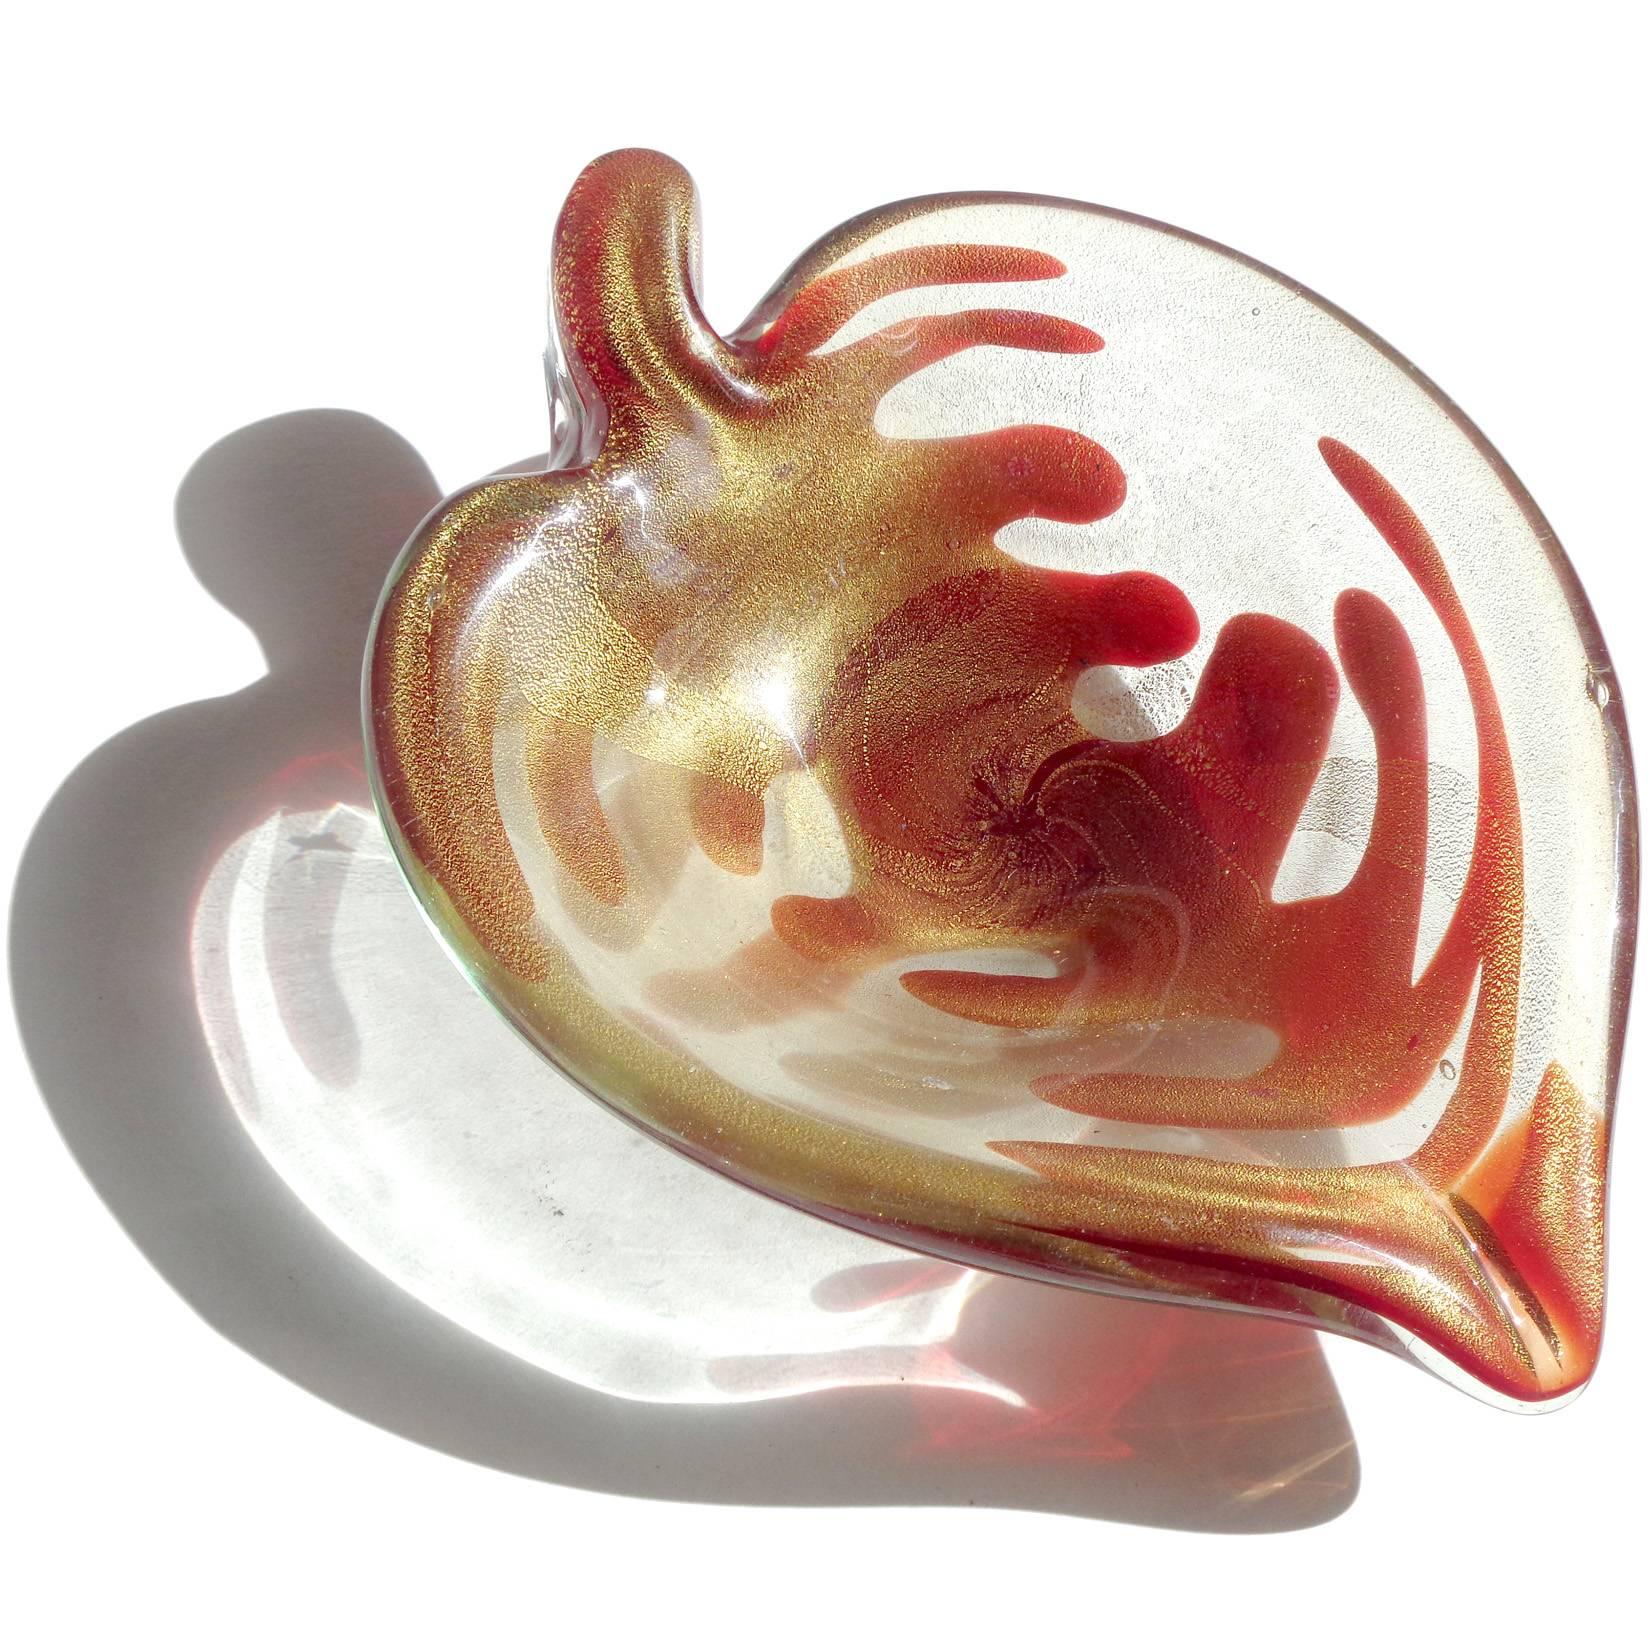 Magnifique bol en verre soufflé à la main de Murano, rouge sang et mouchetures d'or. La pièce présente un design unique, ressemblant aux veines d'un cœur, et est abondamment recouverte de feuilles d'or. Peut être utilisé comme pièce d'exposition sur